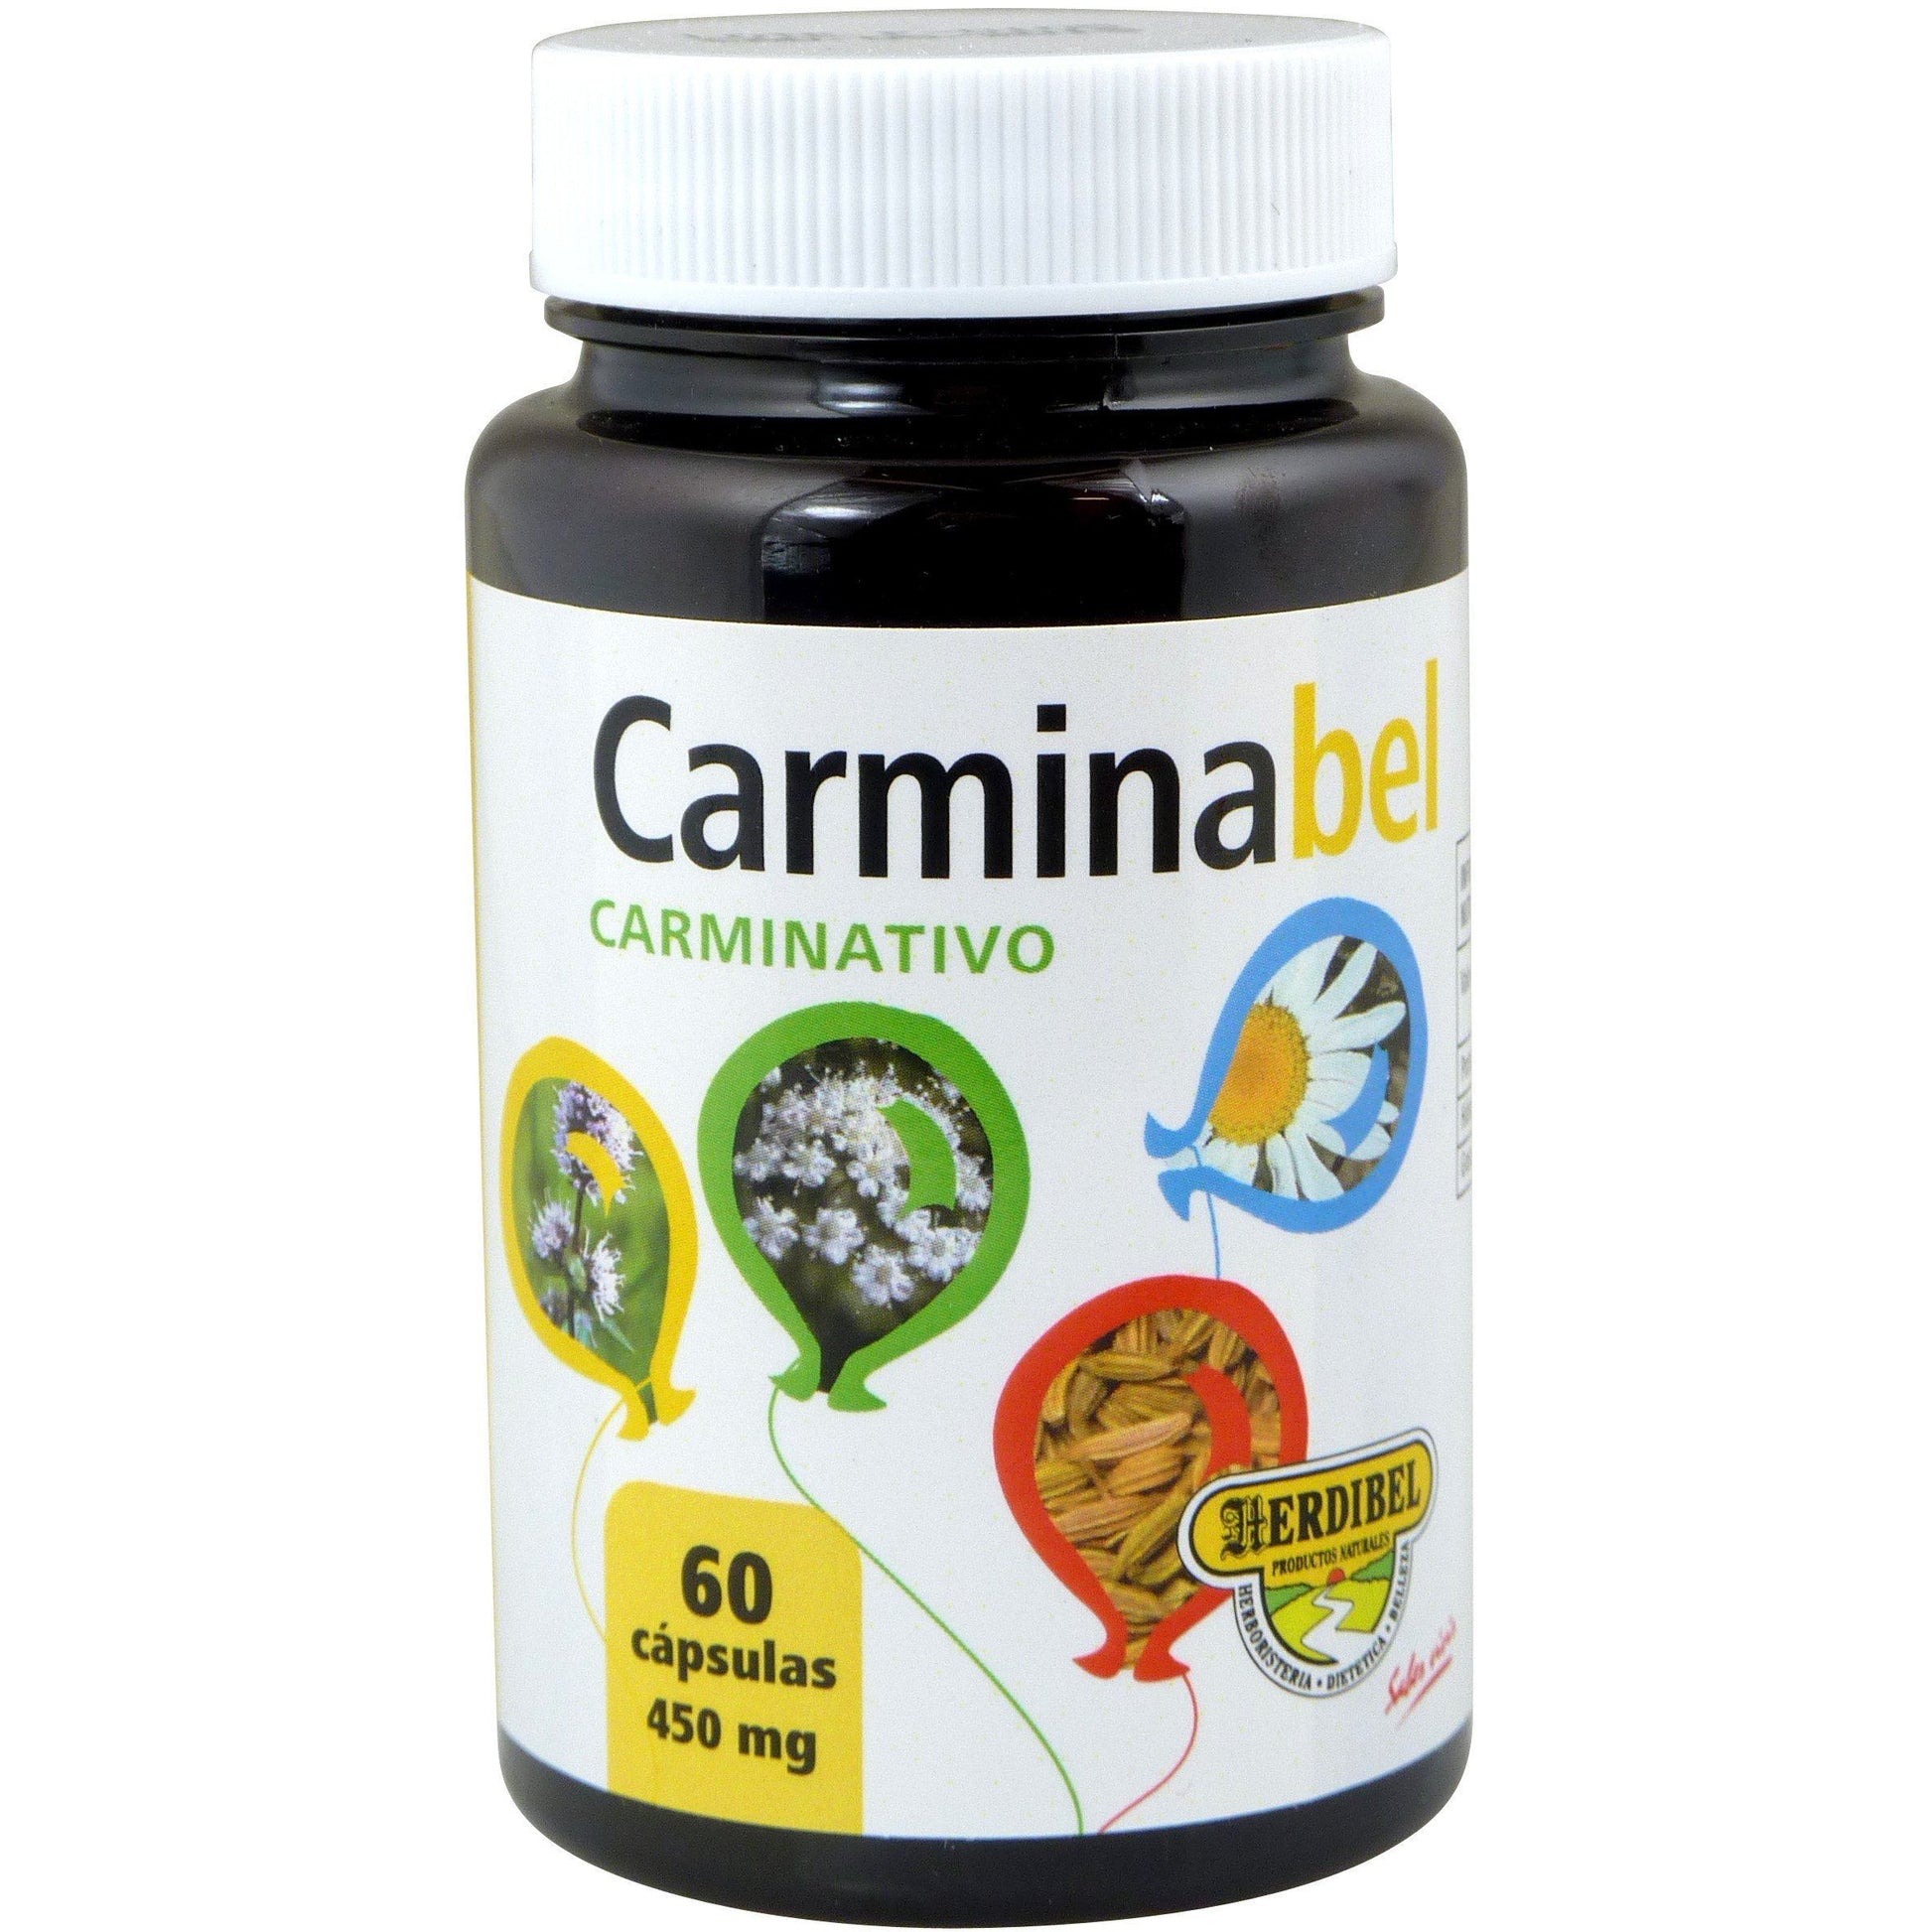 Carminabel 60 Capsulas | Herdibel - Dietetica Ferrer